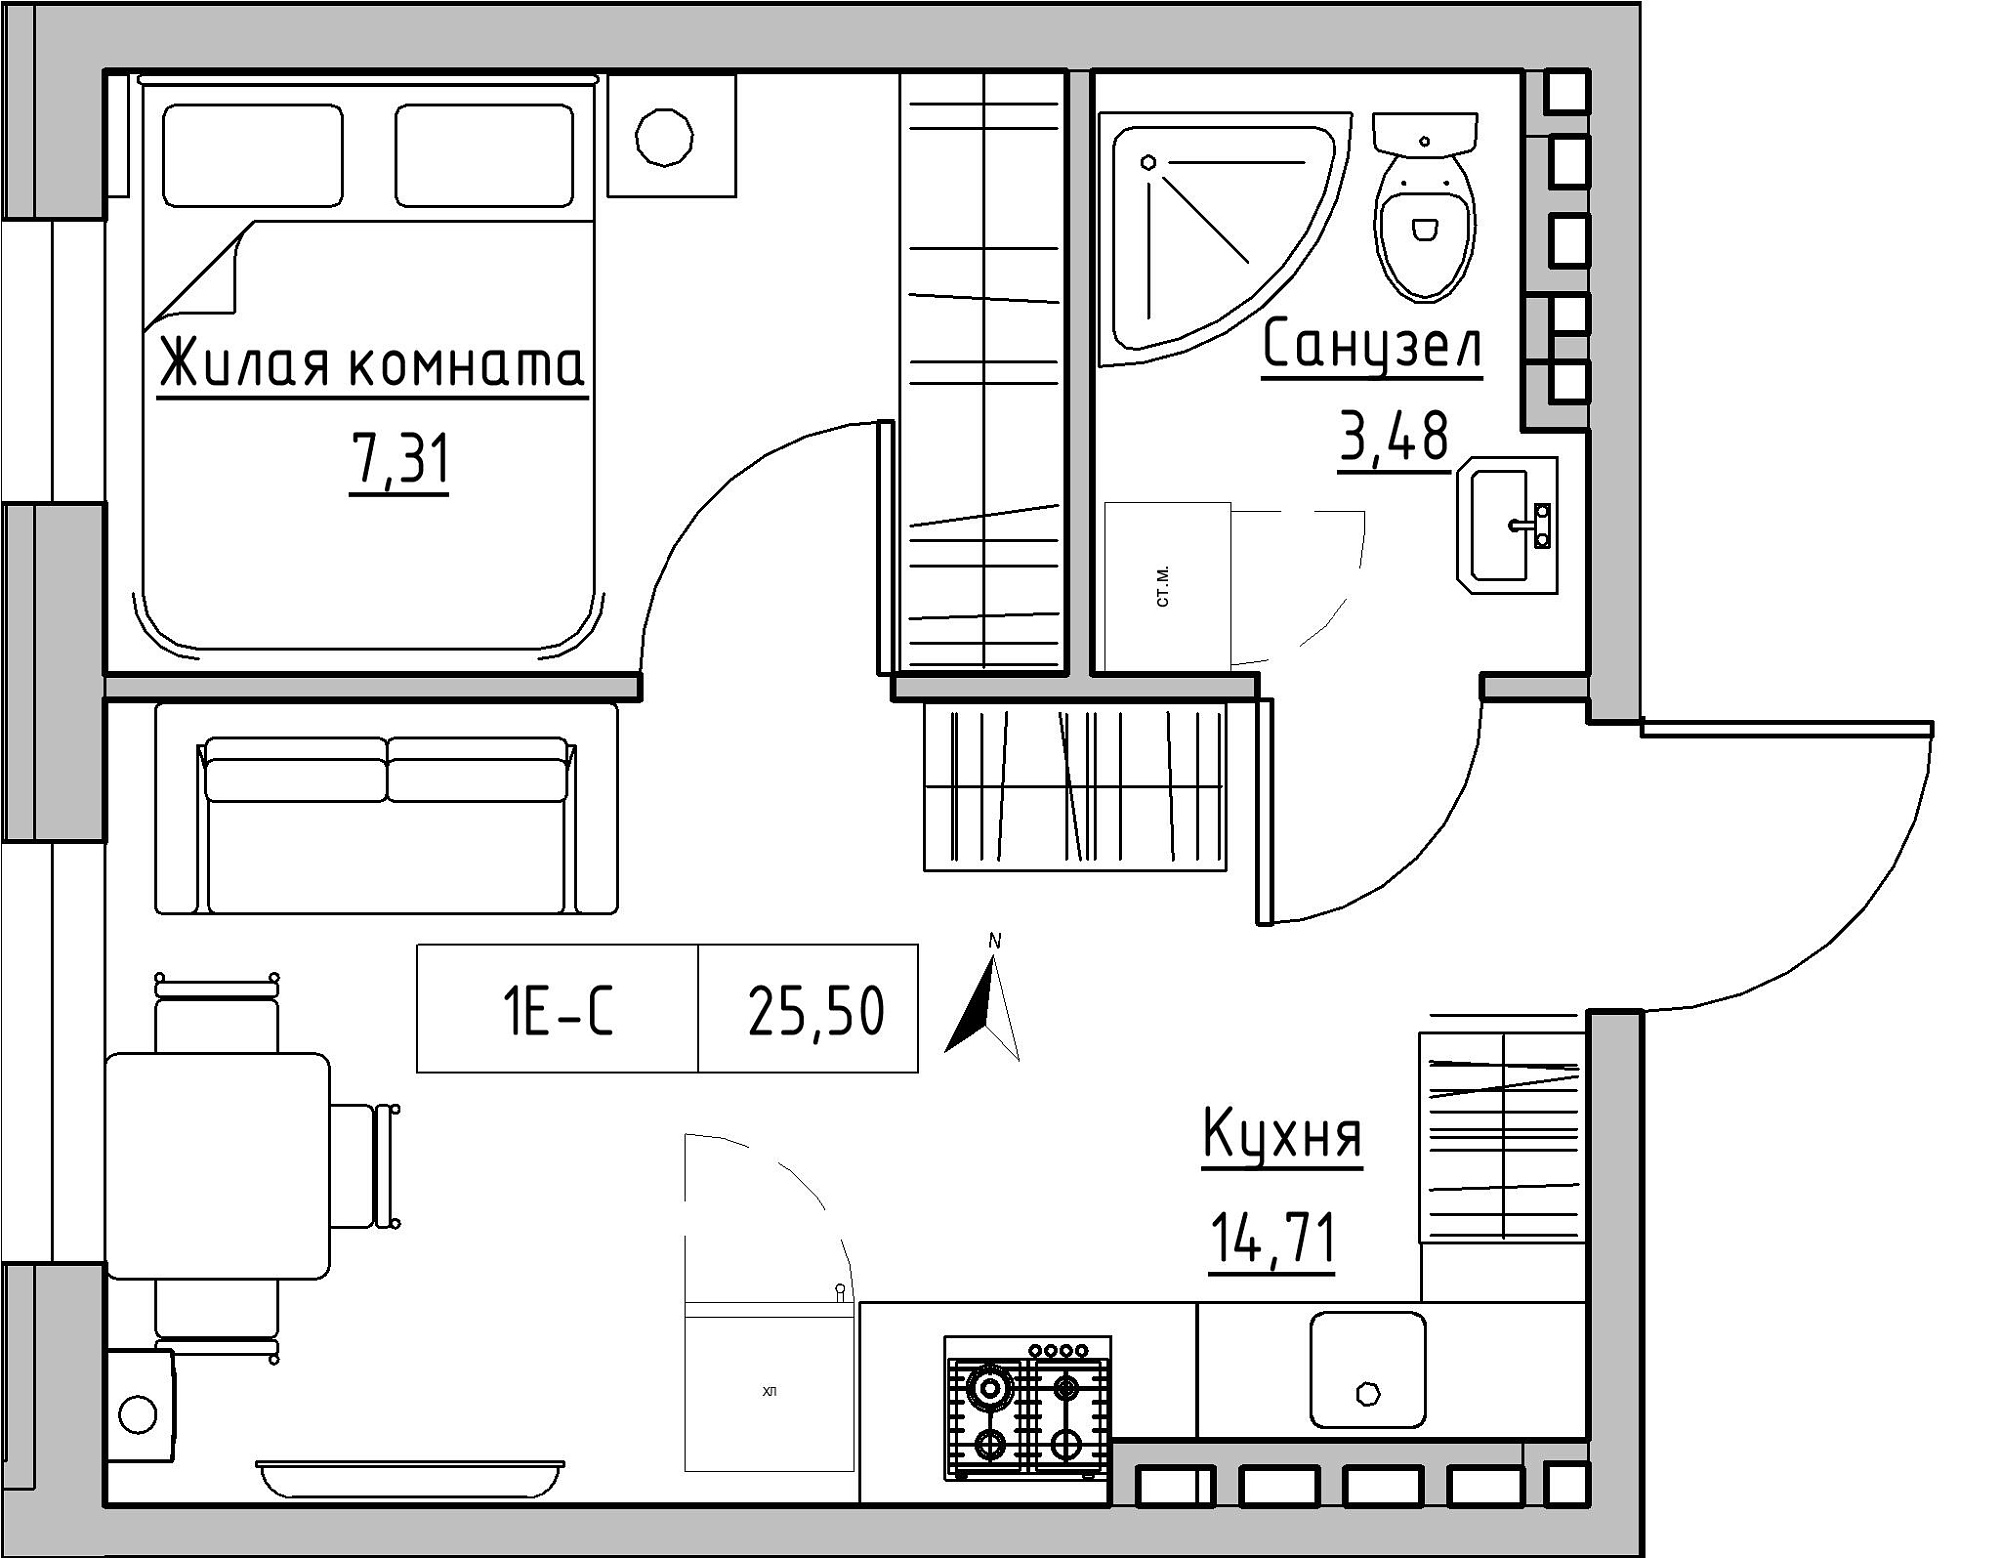 Планування 1-к квартира площею 25.5м2, KS-024-04/0014.